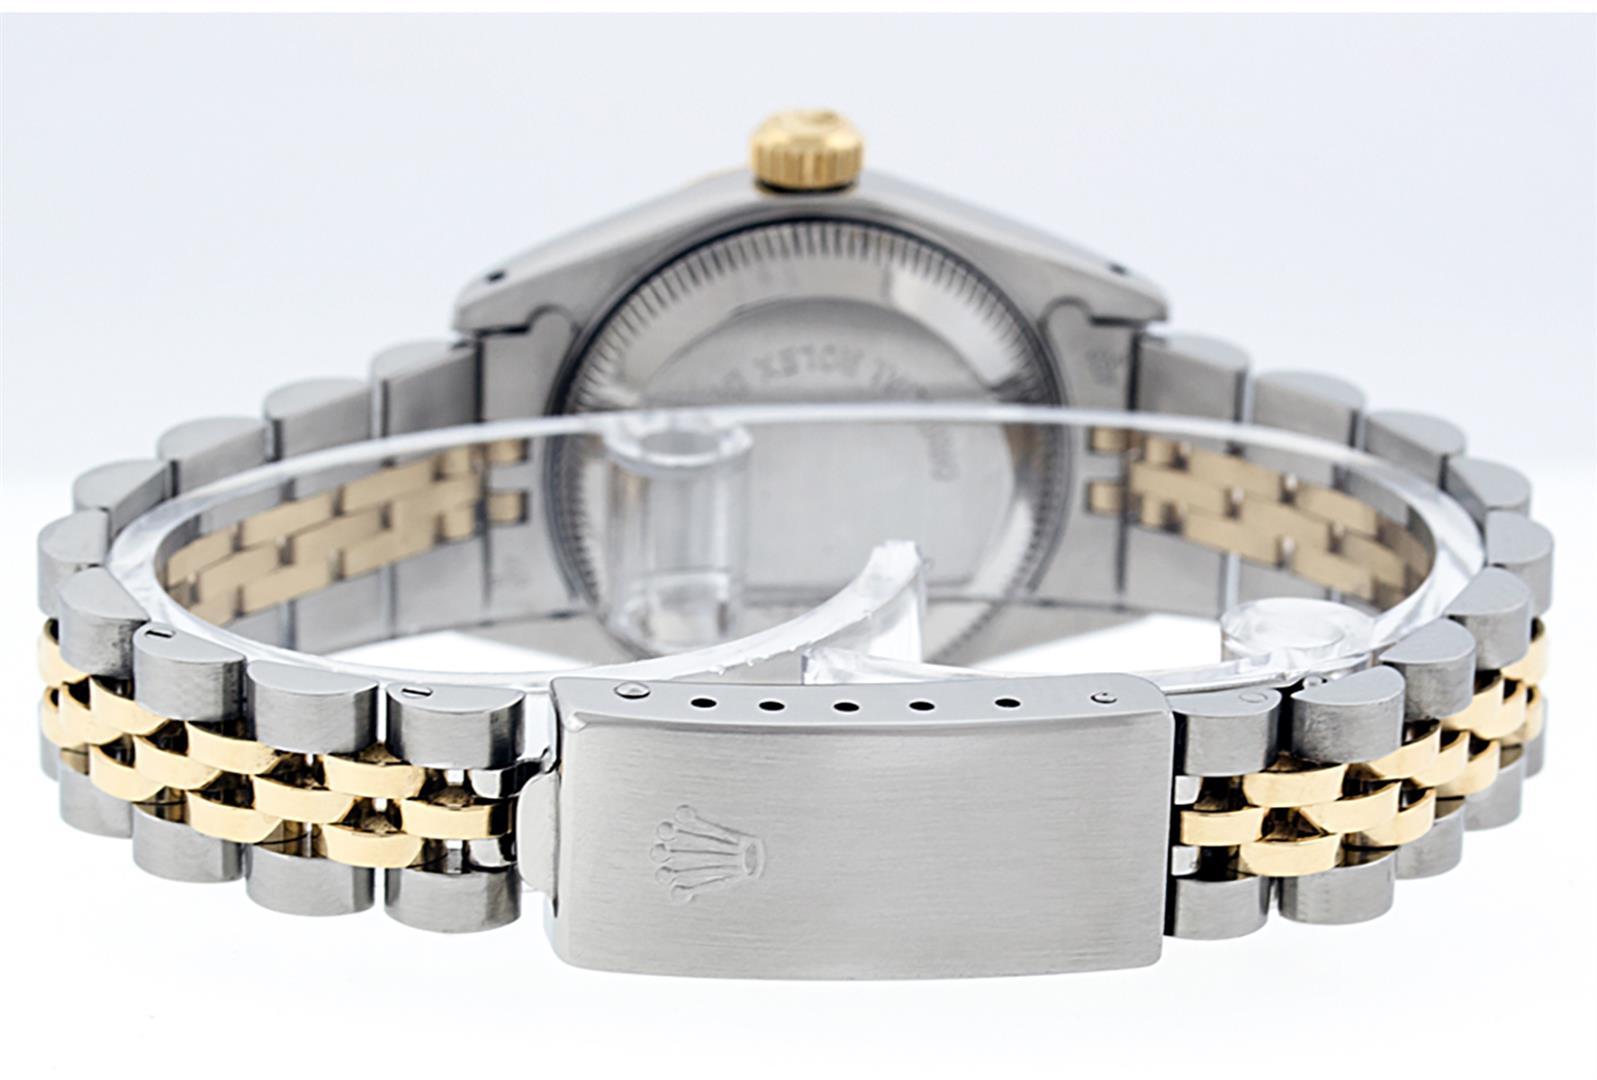 Rolex Ladies 2 Tone White Index Fluted Bezel 26MM Wristwatch